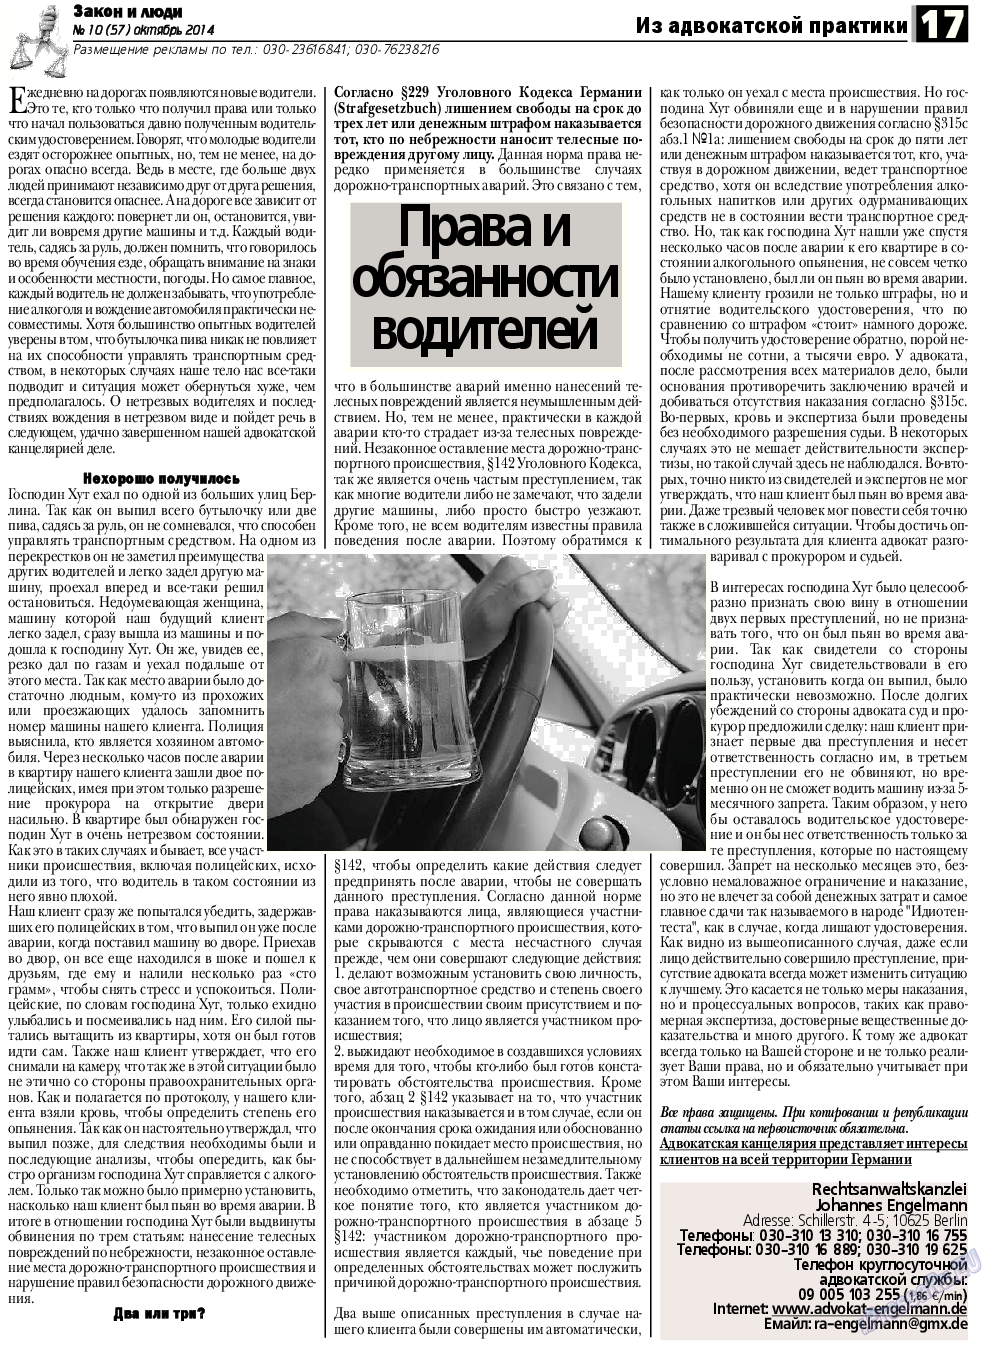 Закон и люди, газета. 2014 №10 стр.17